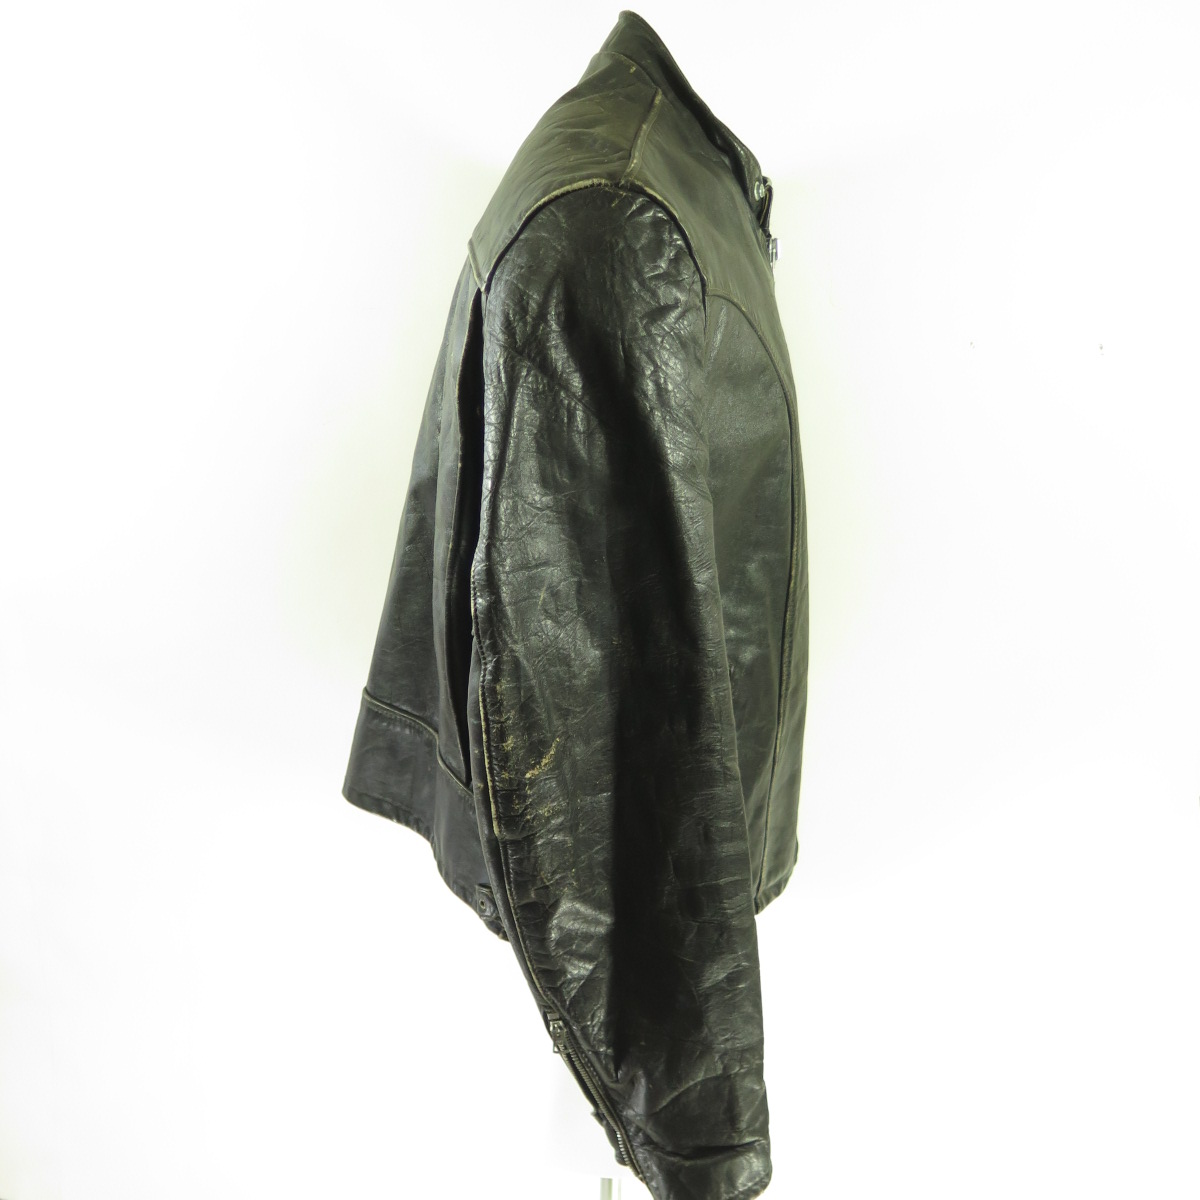 CENTURY 90 COCOA LEATHER JACKET - Men's Leather jacket